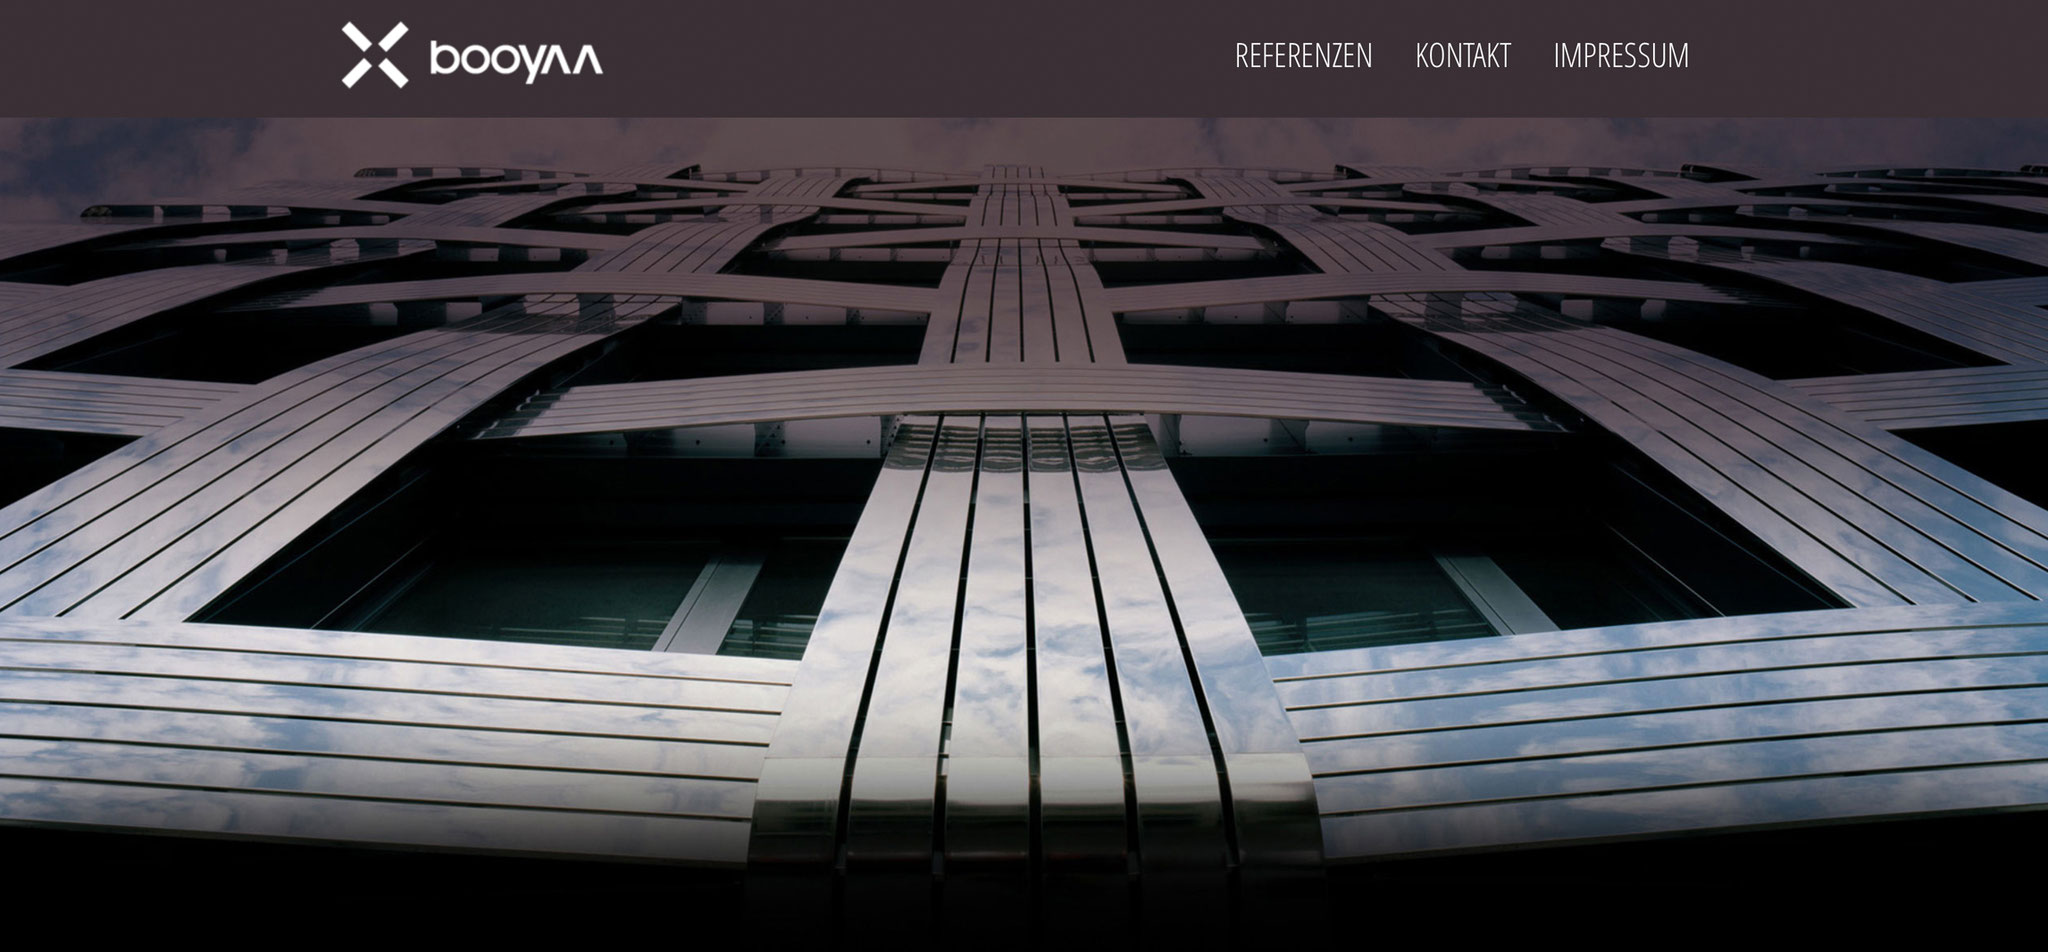 BOOYAA | logo-relaunch und corporate design – infragrau, gute Gestaltung 